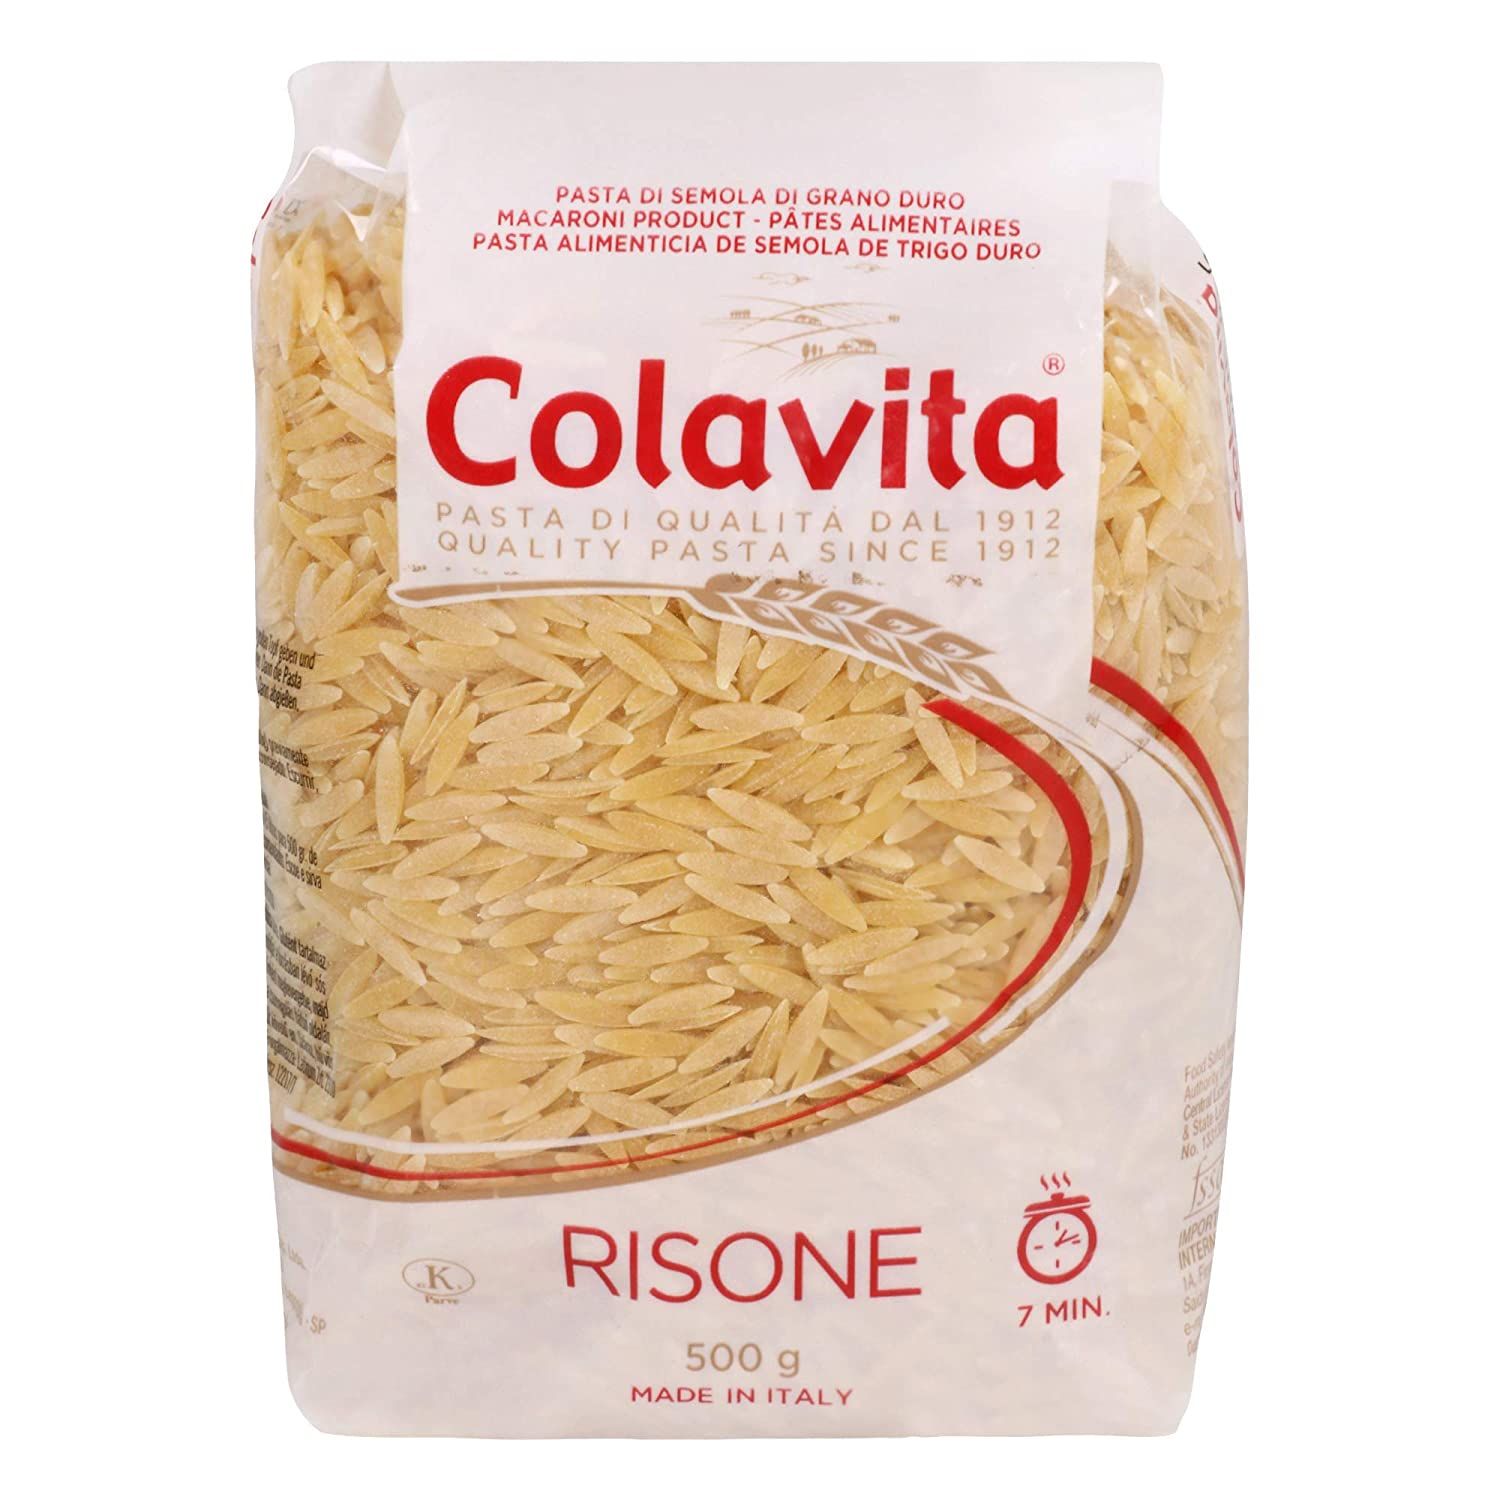 Colavita Risone Pasta Image